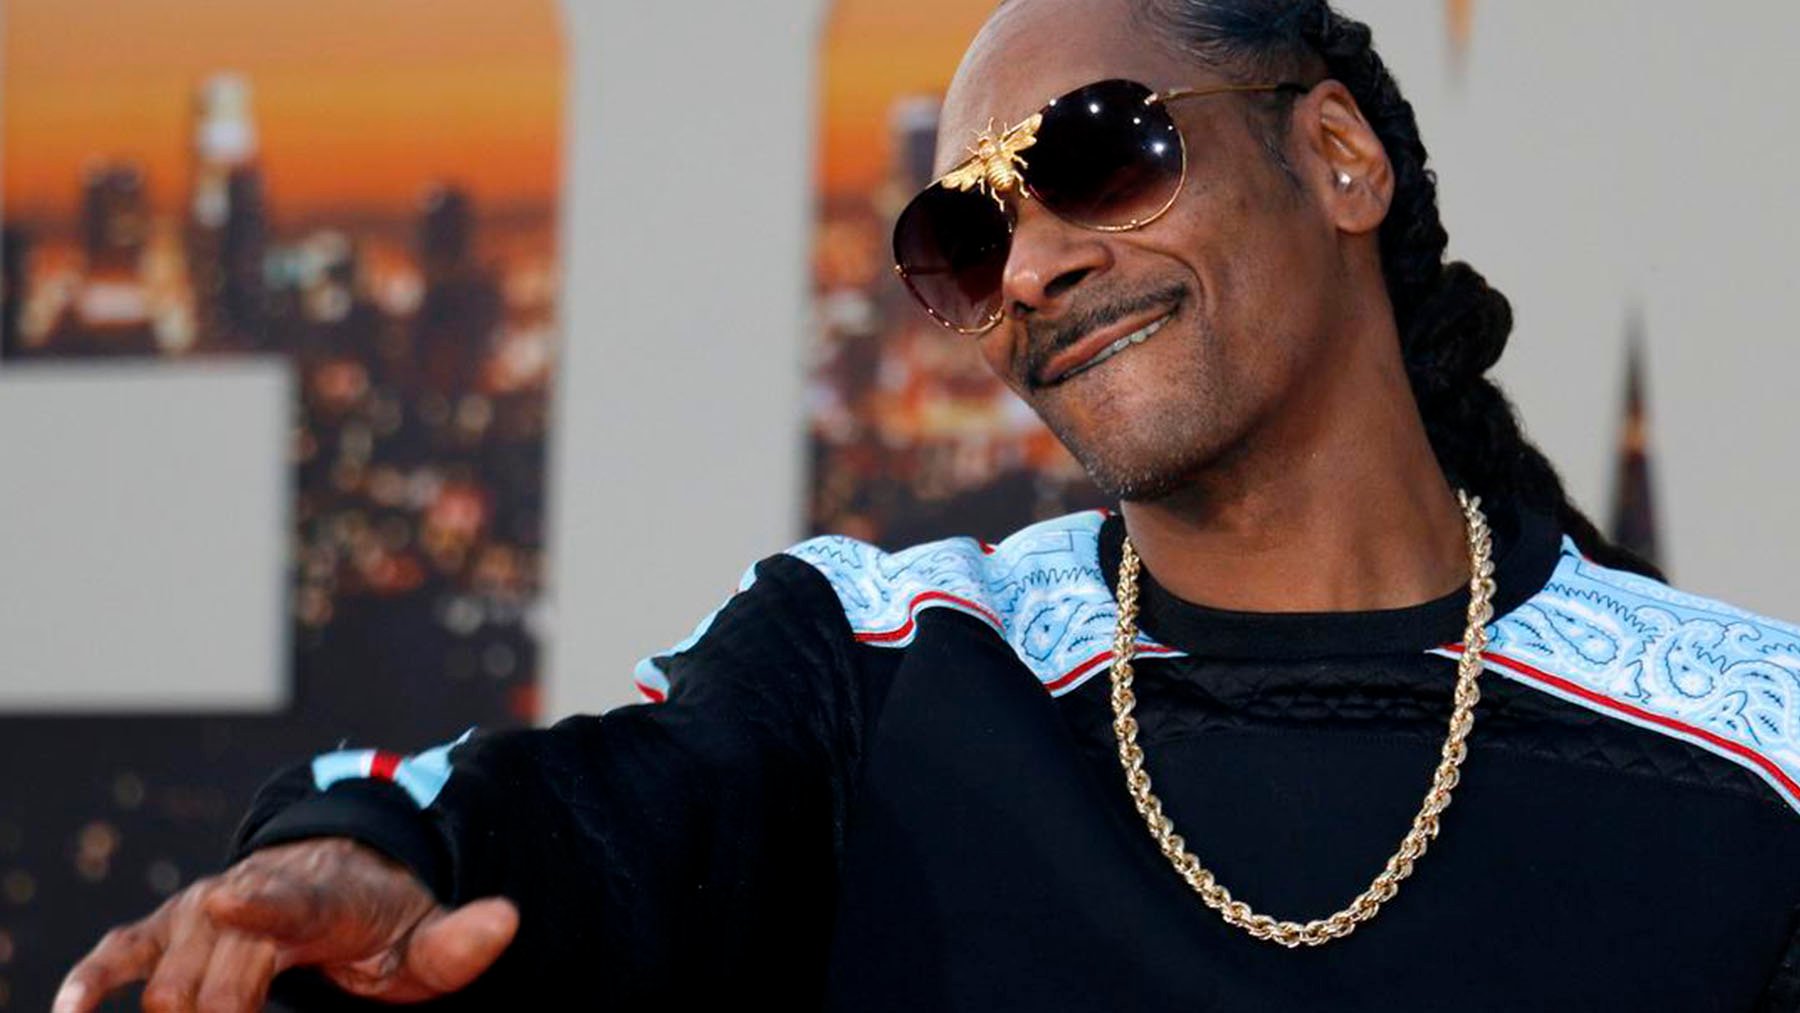 El rapero Snoop Dogg